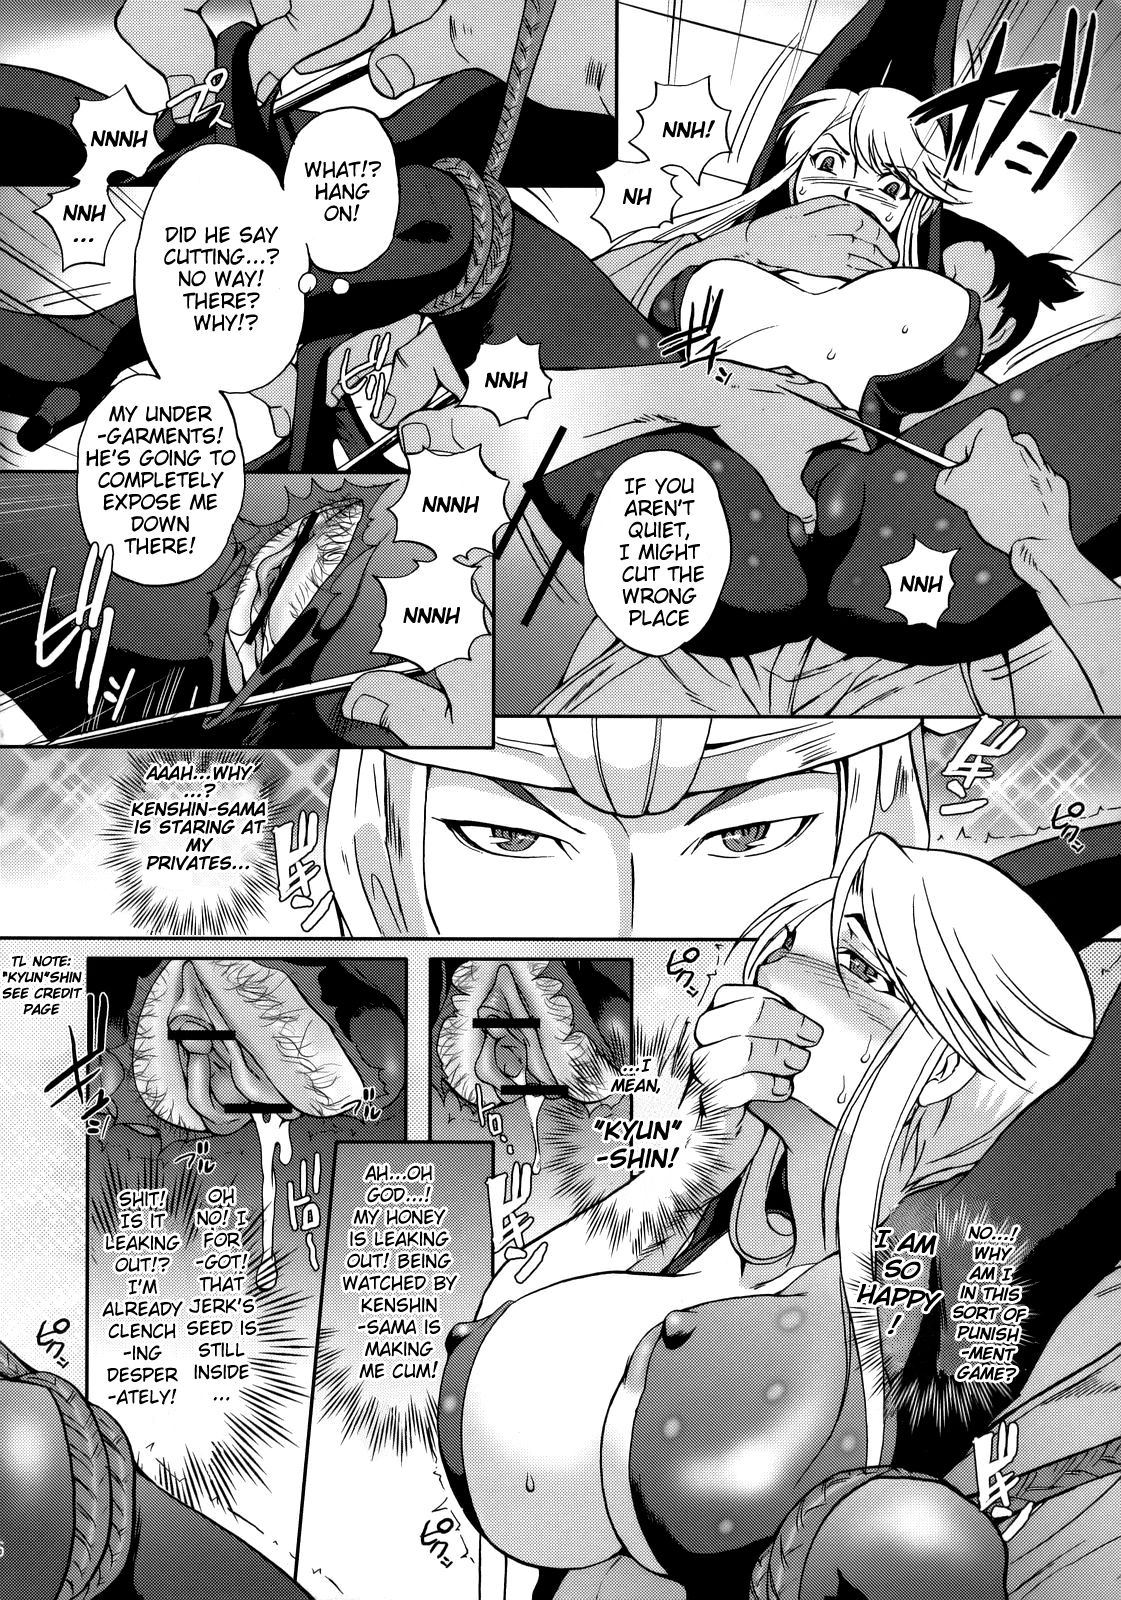 Read Kasuga Mau Sengoku Basara [english] Hentai Online Porn Manga And Doujinshi